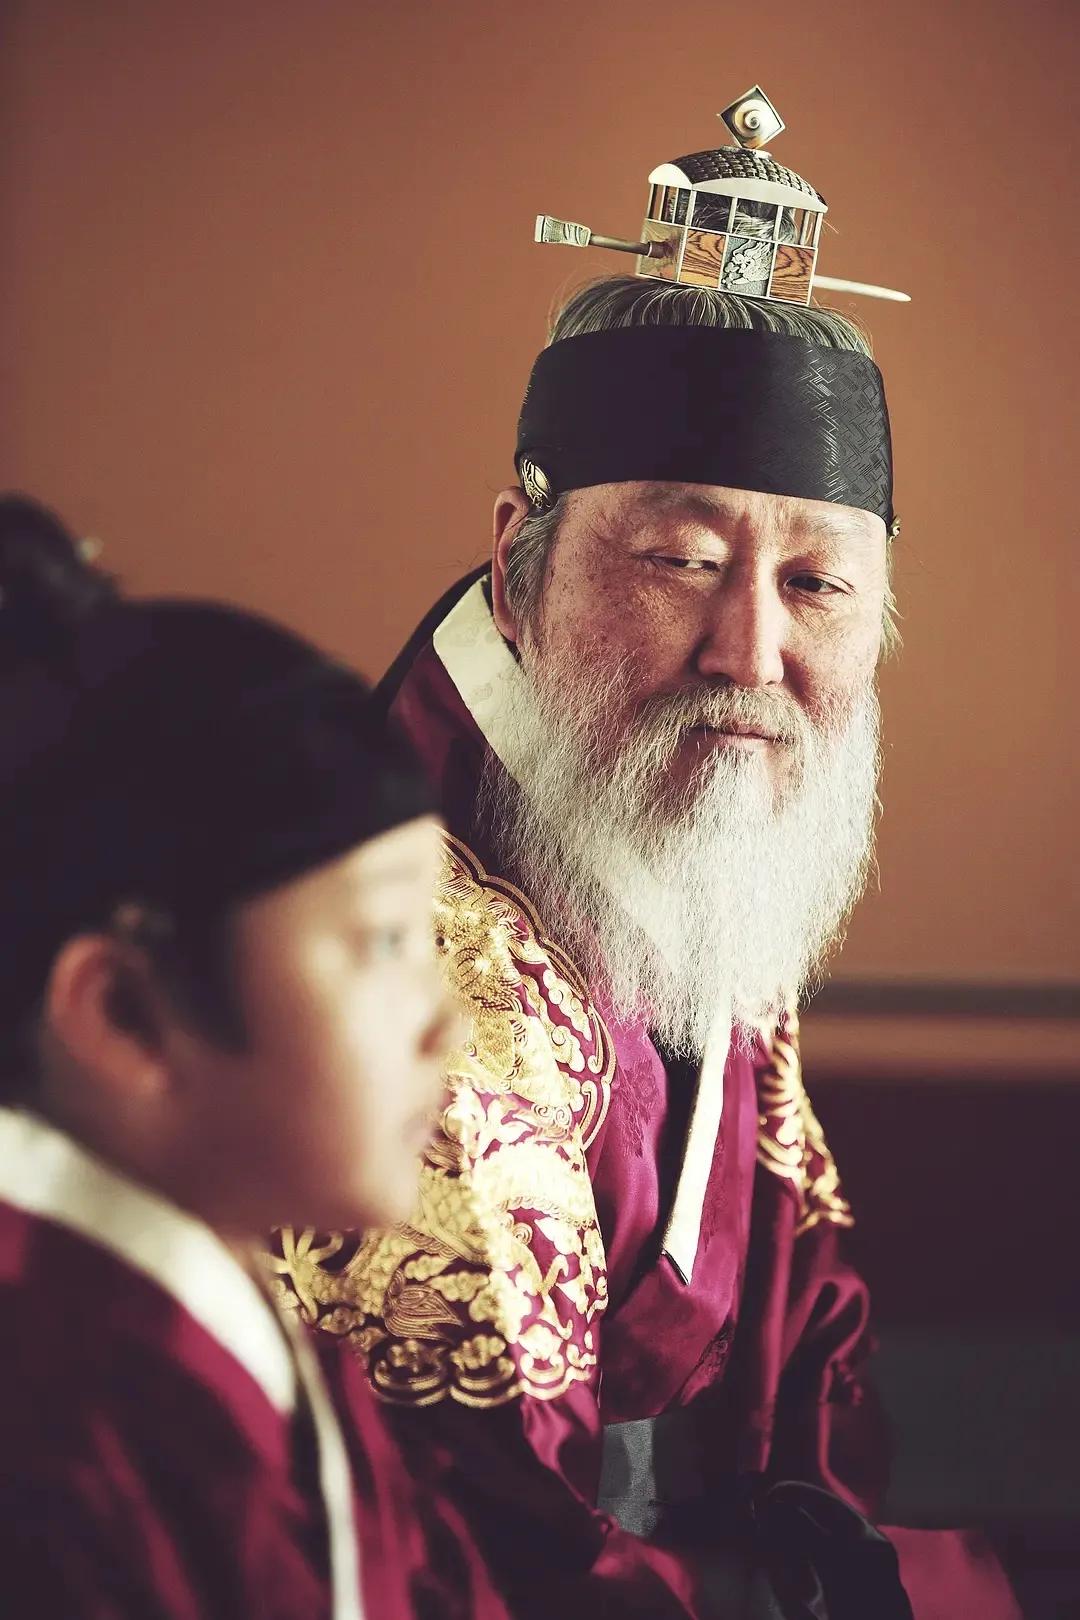 豆瓣8.5分的韩国电影《思悼》，儿子被父亲关进米柜8天而亡的故事